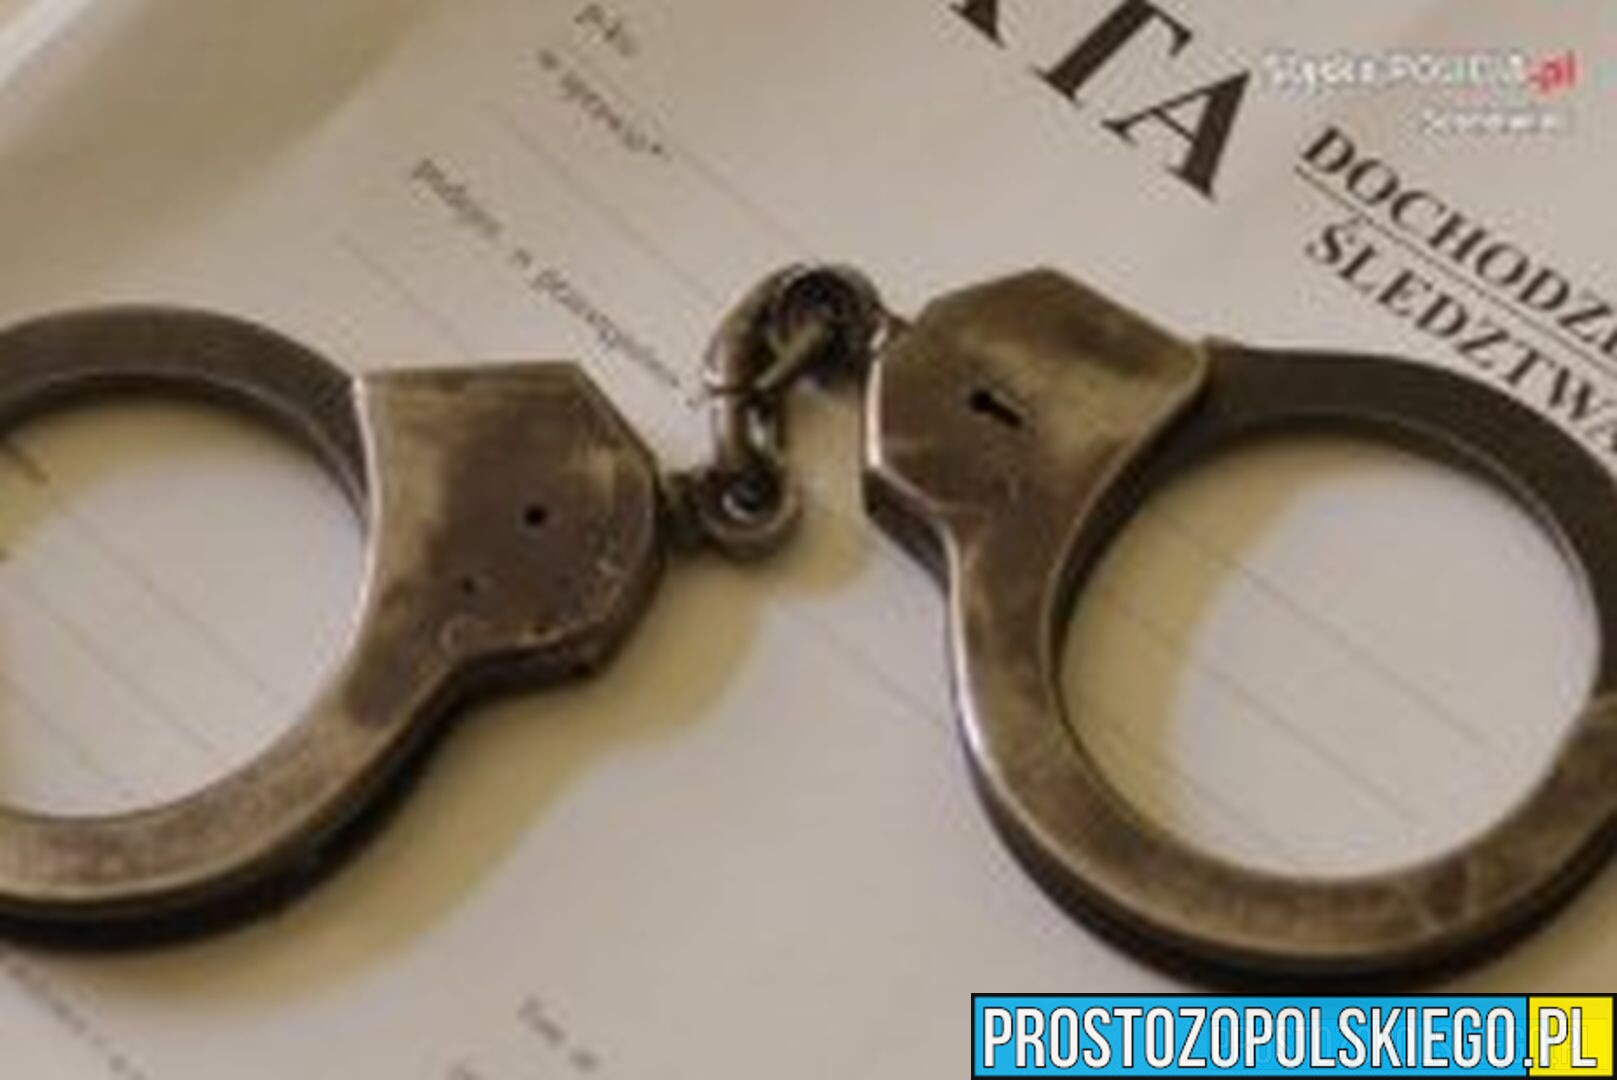 48-latek został zatrzymany przez policjantów z Głubczyc. Usłyszał 10 zarzutów kradzieży.